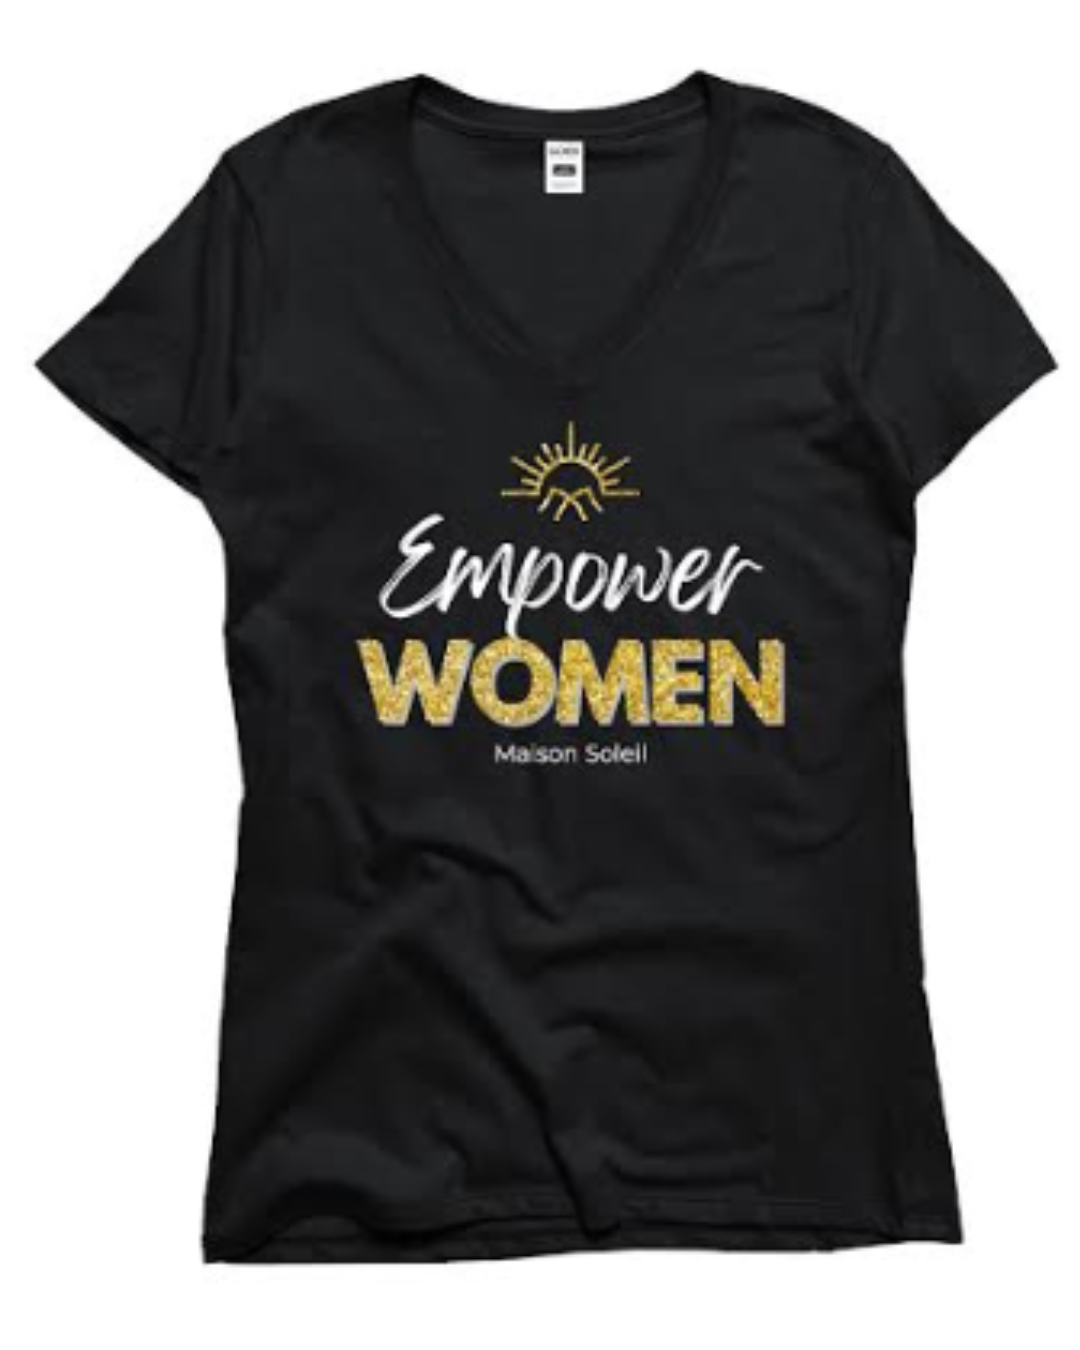 Empower Women T-shirt Shirts GOEX Apparel   